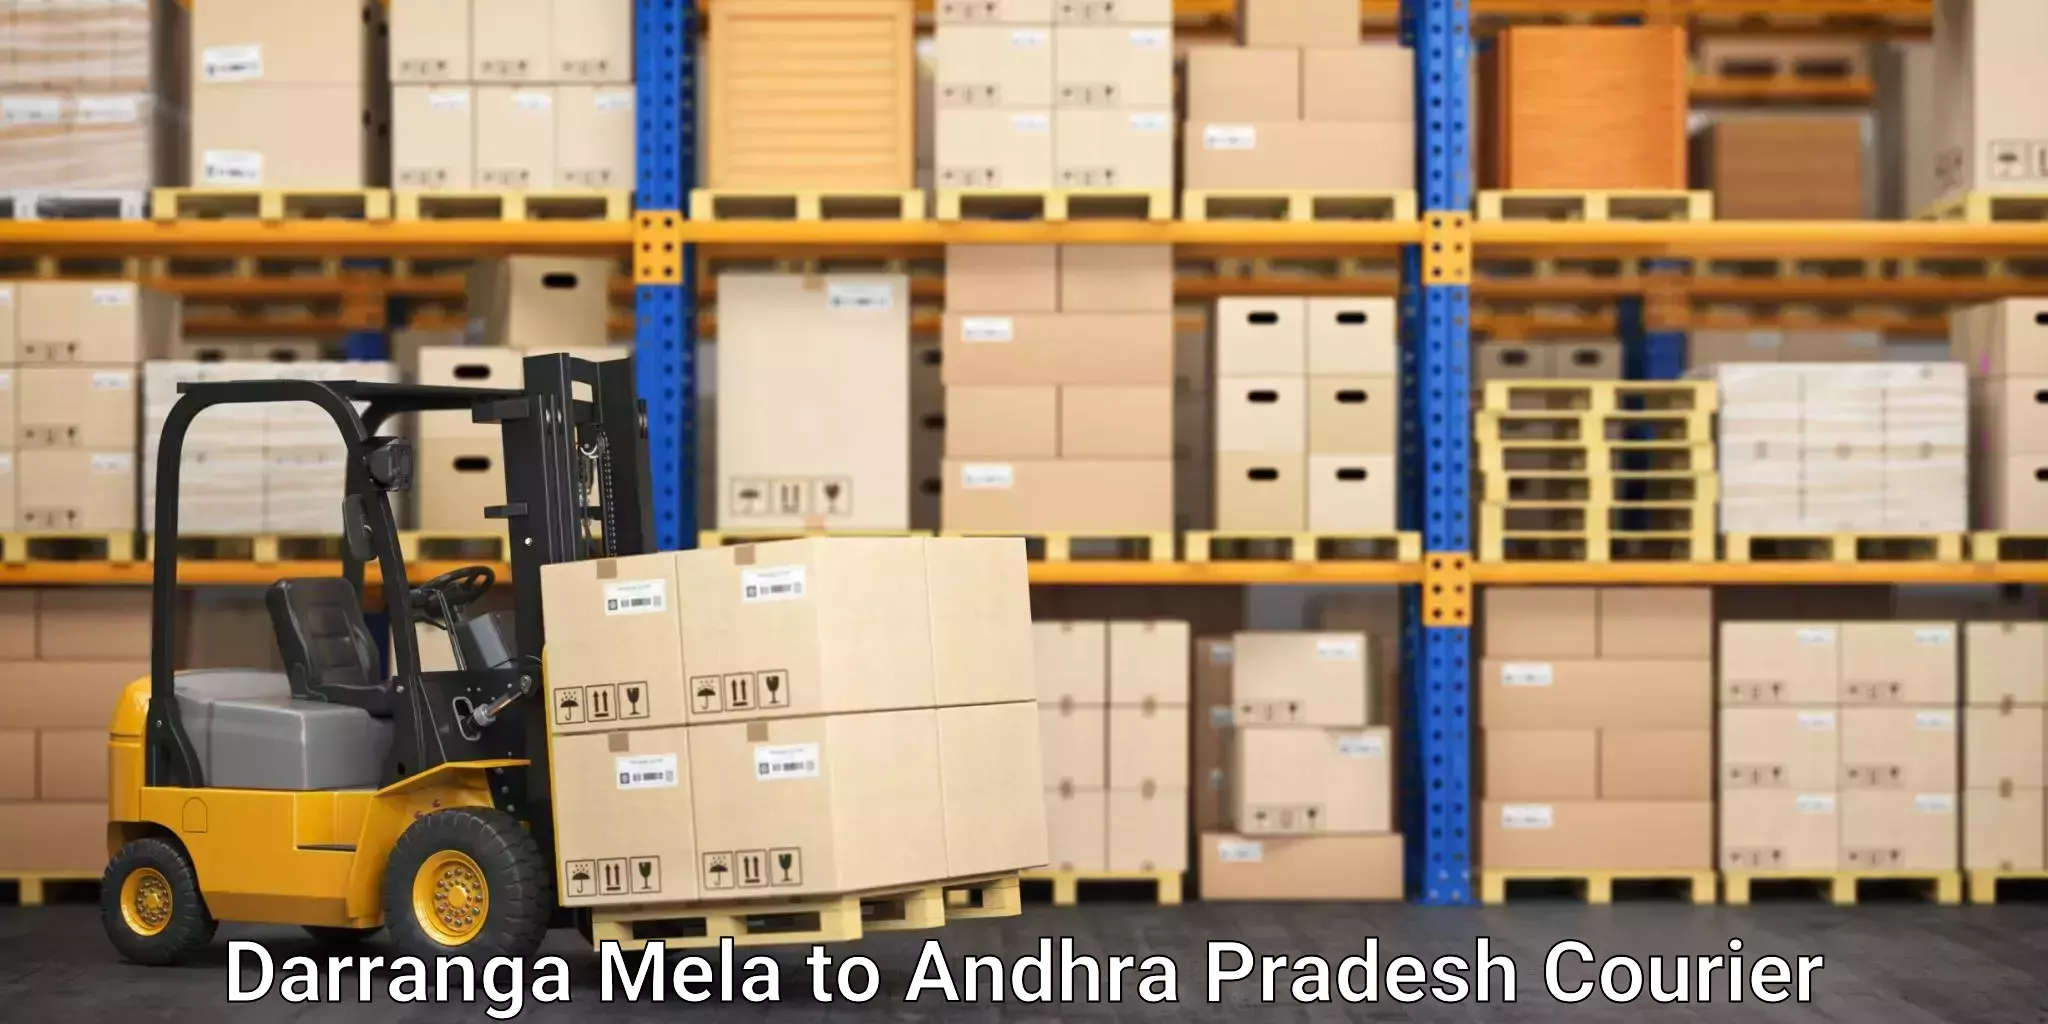 Round-the-clock parcel delivery Darranga Mela to Andhra Pradesh